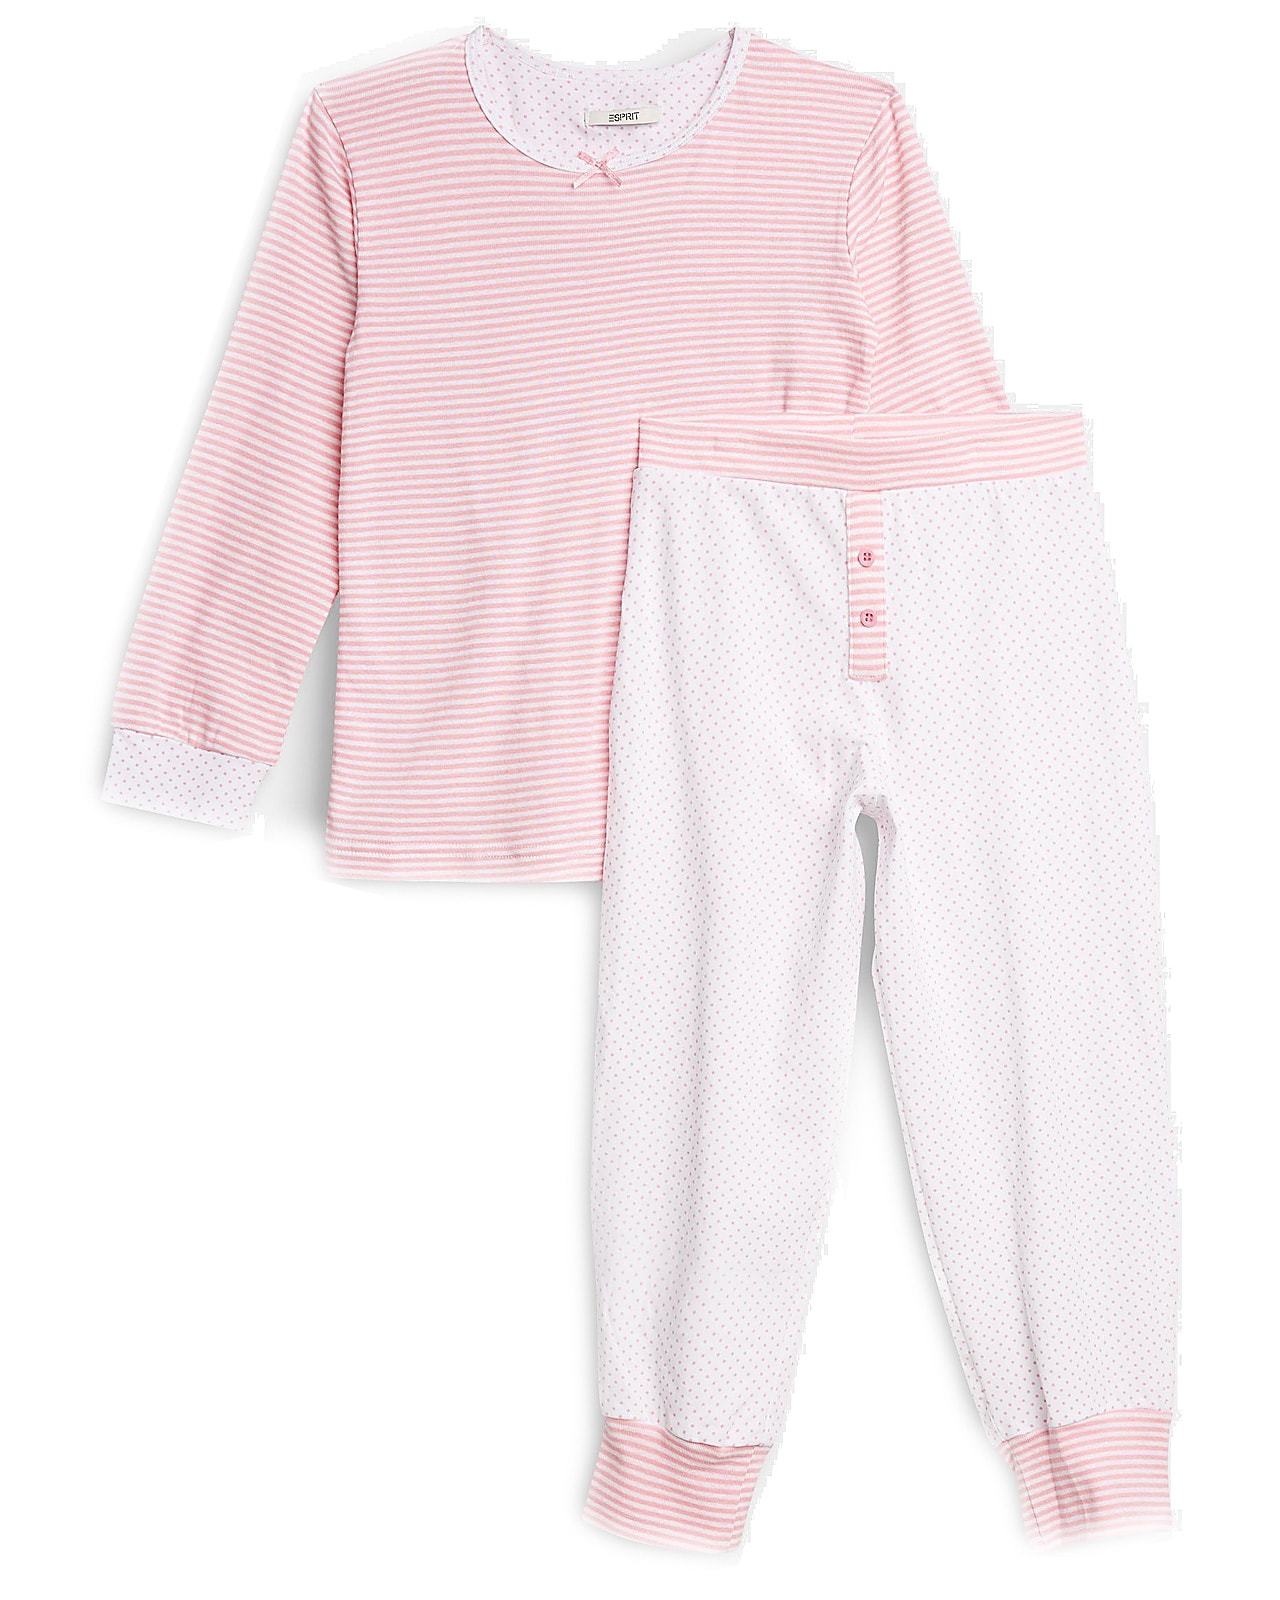 Esprit pyjamassæt, whiterose. Undertøj og til alle børn, tweens, teens og